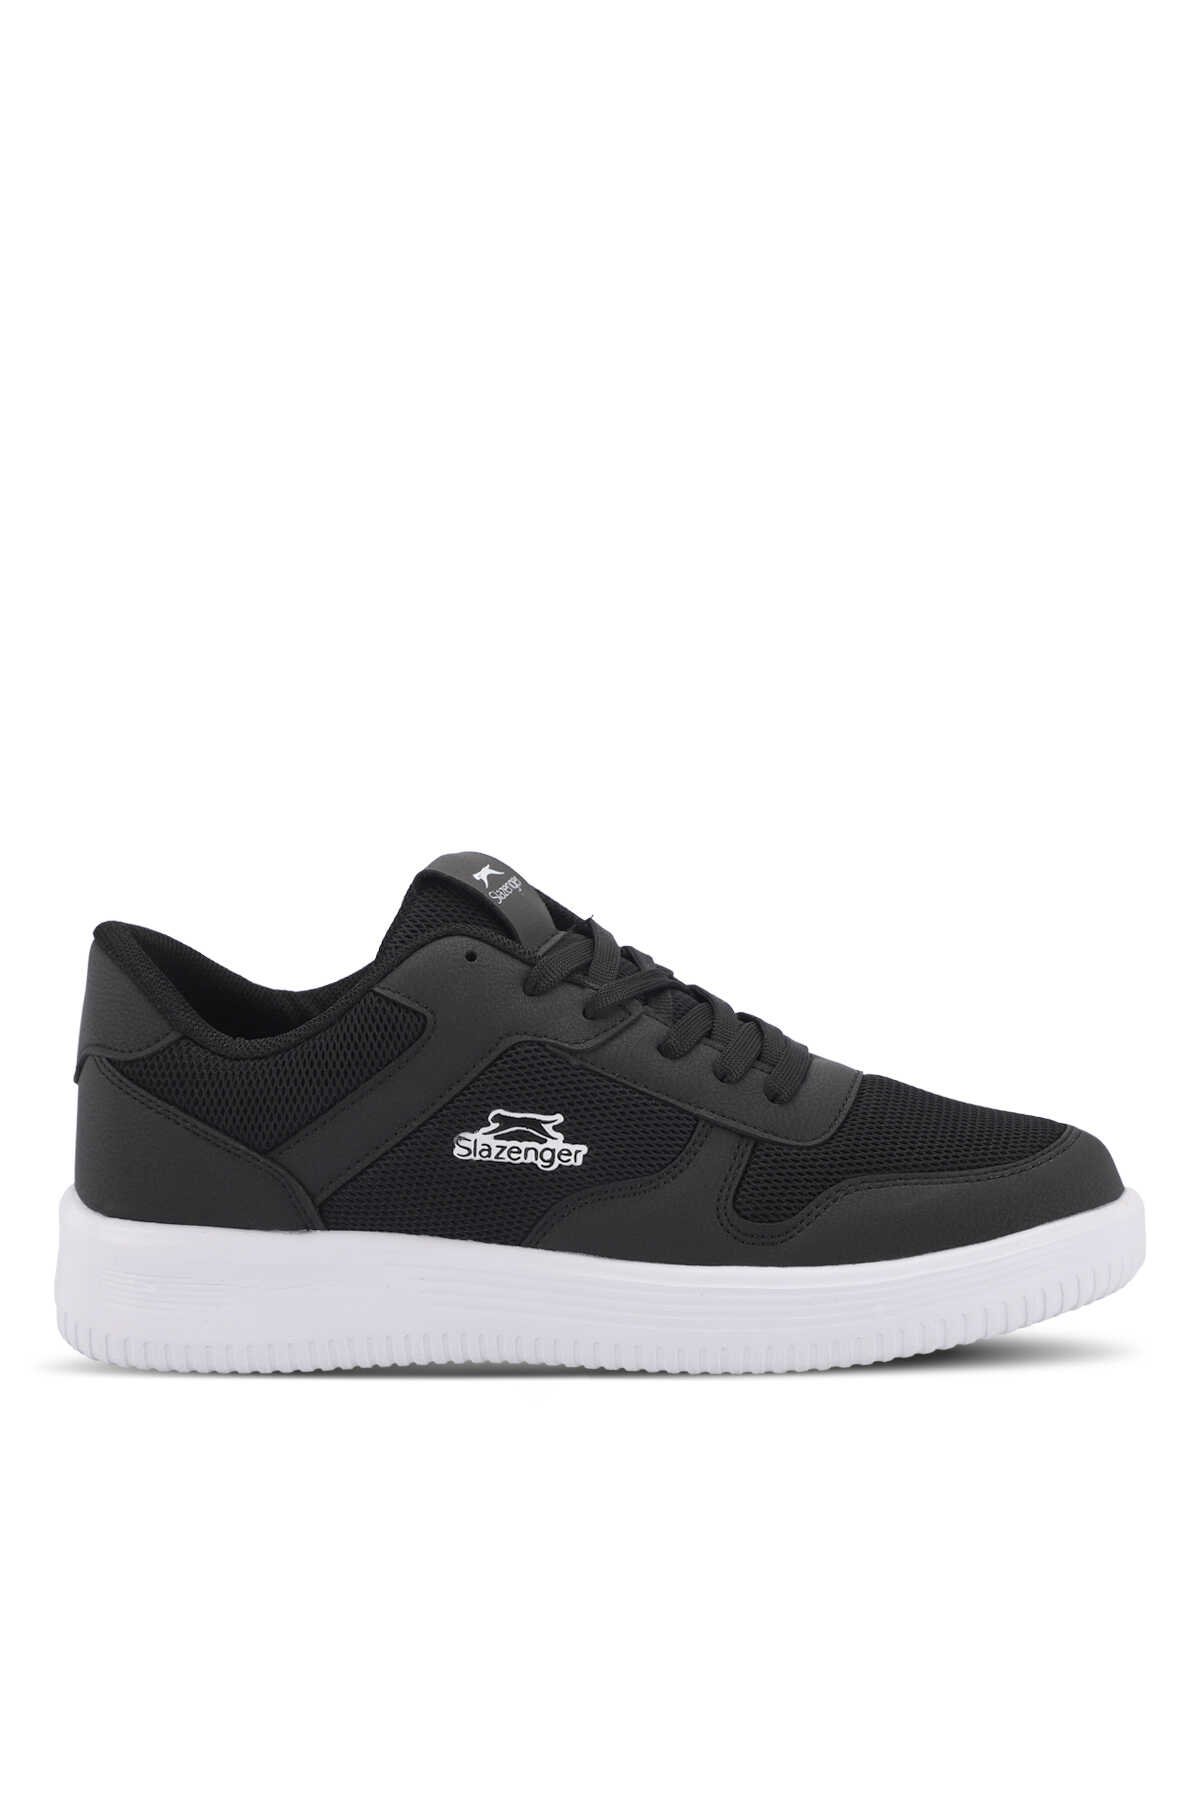 Slazenger - Slazenger ELIORA I Sneaker Erkek Ayakkabı Siyah / Beyaz